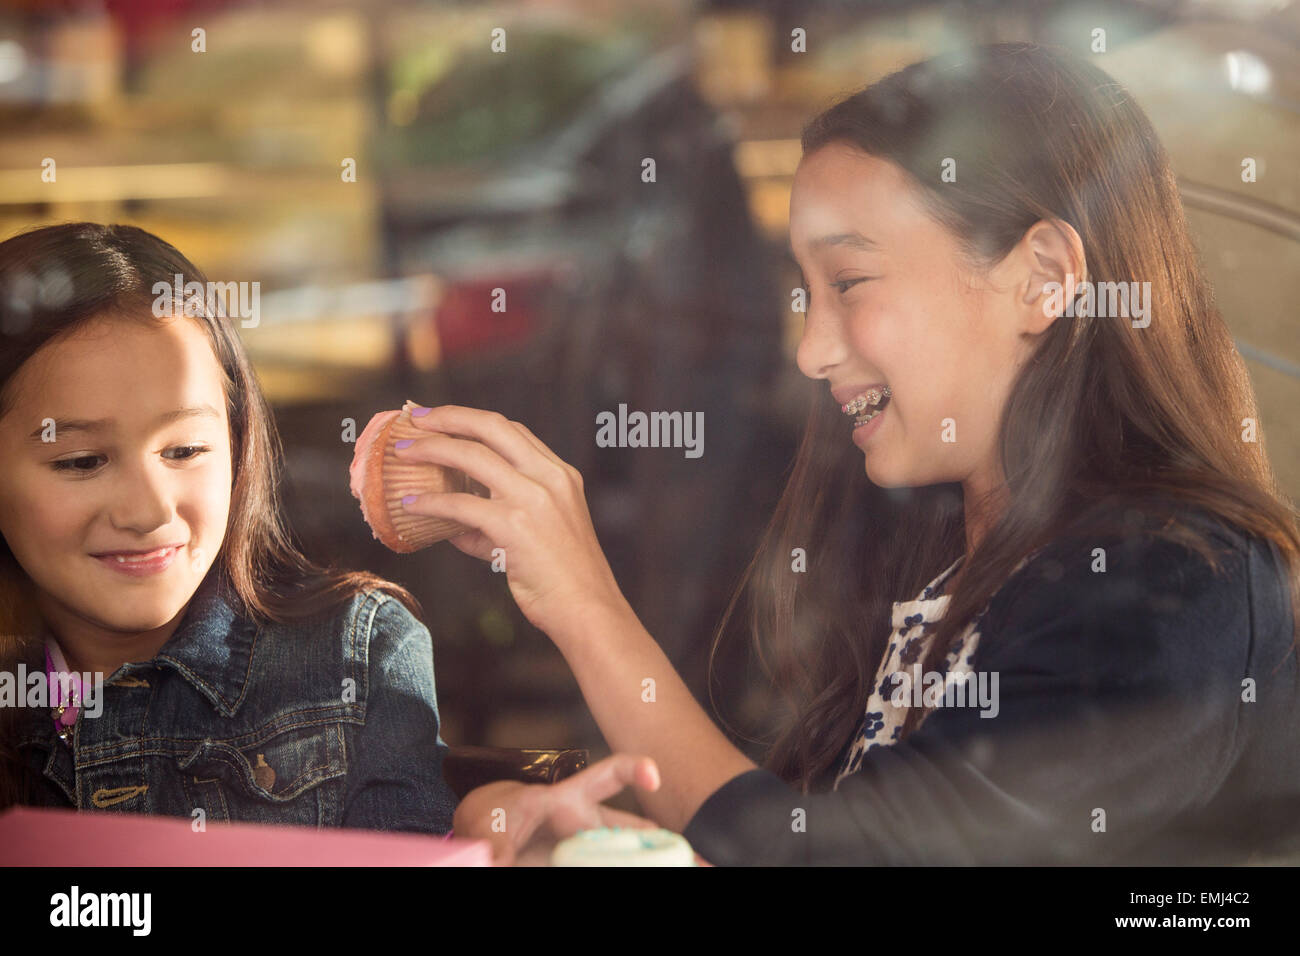 Zwei lächelnde junge Mädchen essen Cupcakes im Café Fenster Stockfoto